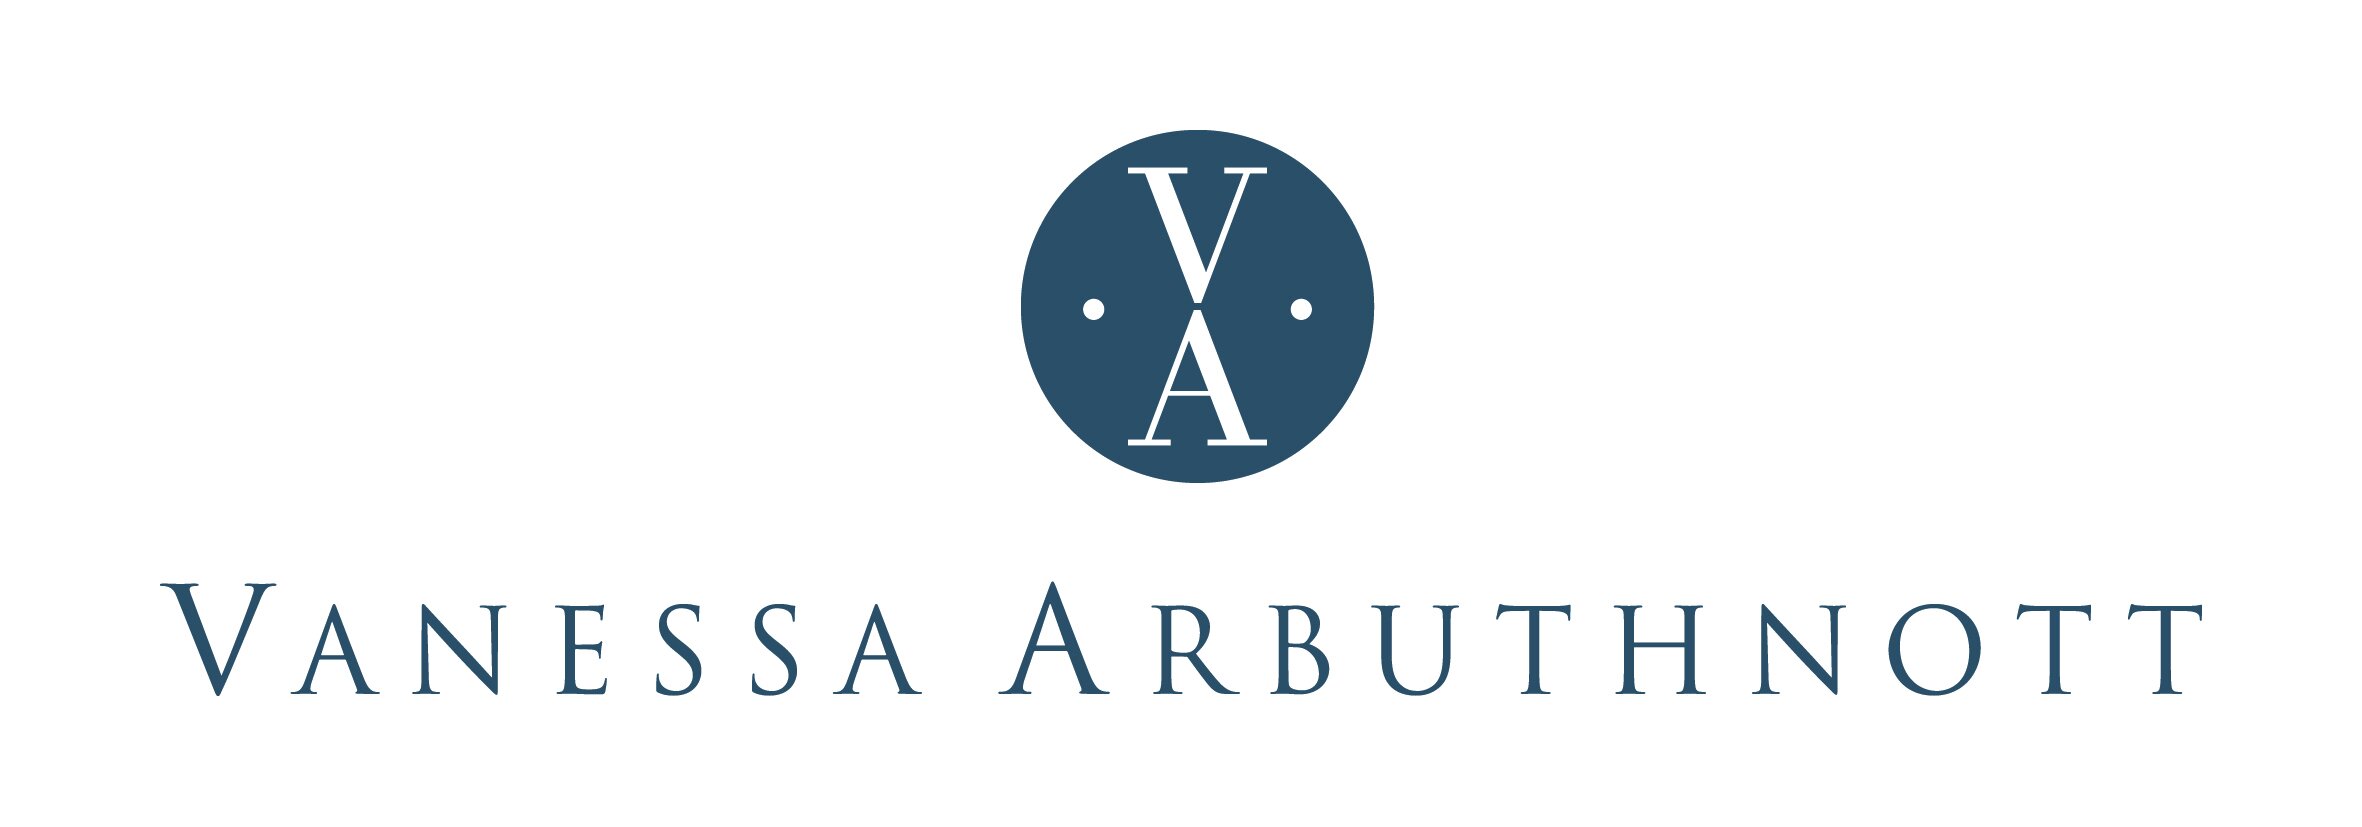 Vanessa Arbuthnott Logo